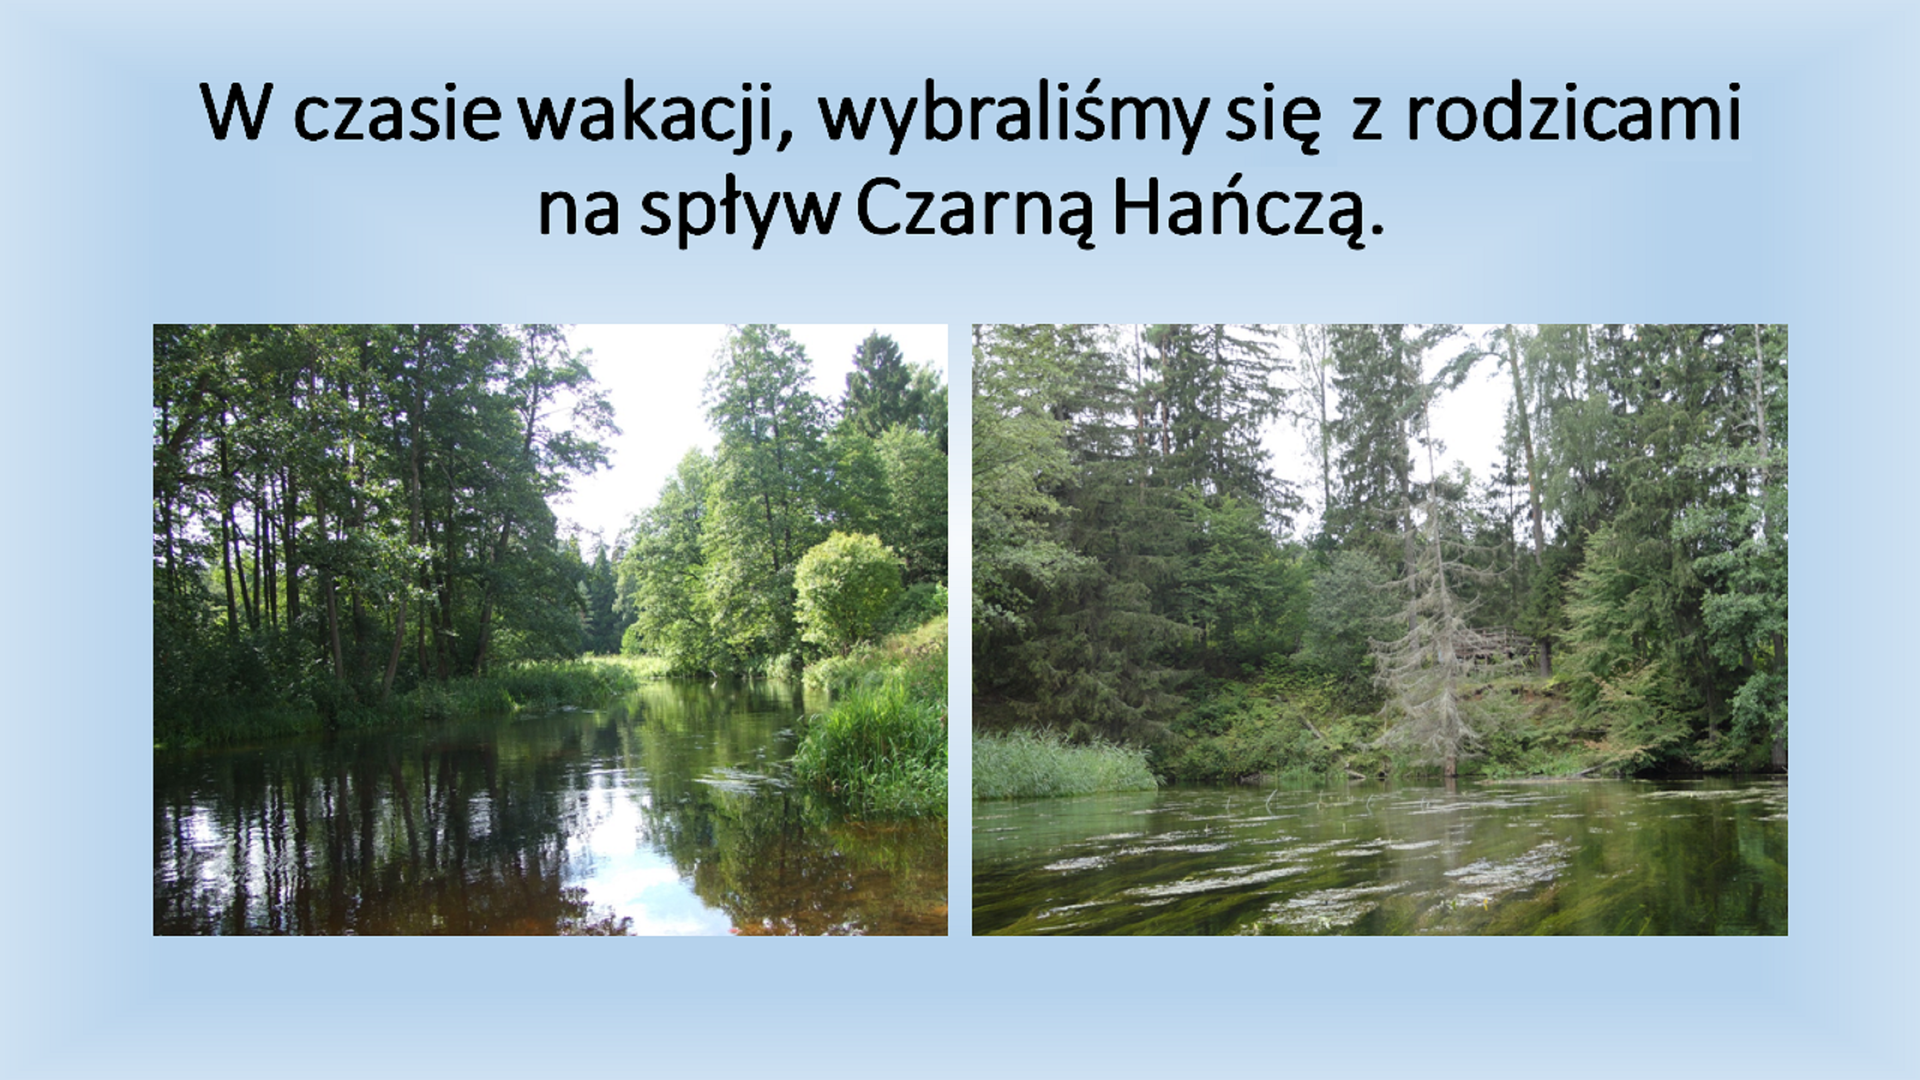 Drugi slajd pod tytułem "W czasie wakacji, wybraliśmy się z rodzicami na spływ Czarną Hańczą.'" Pod tytułem znajdują się dwa zdjęcia przedstawiające las. Zdjęcia zostały zrobione z perspektywy osoby siedzącej w kajaku.